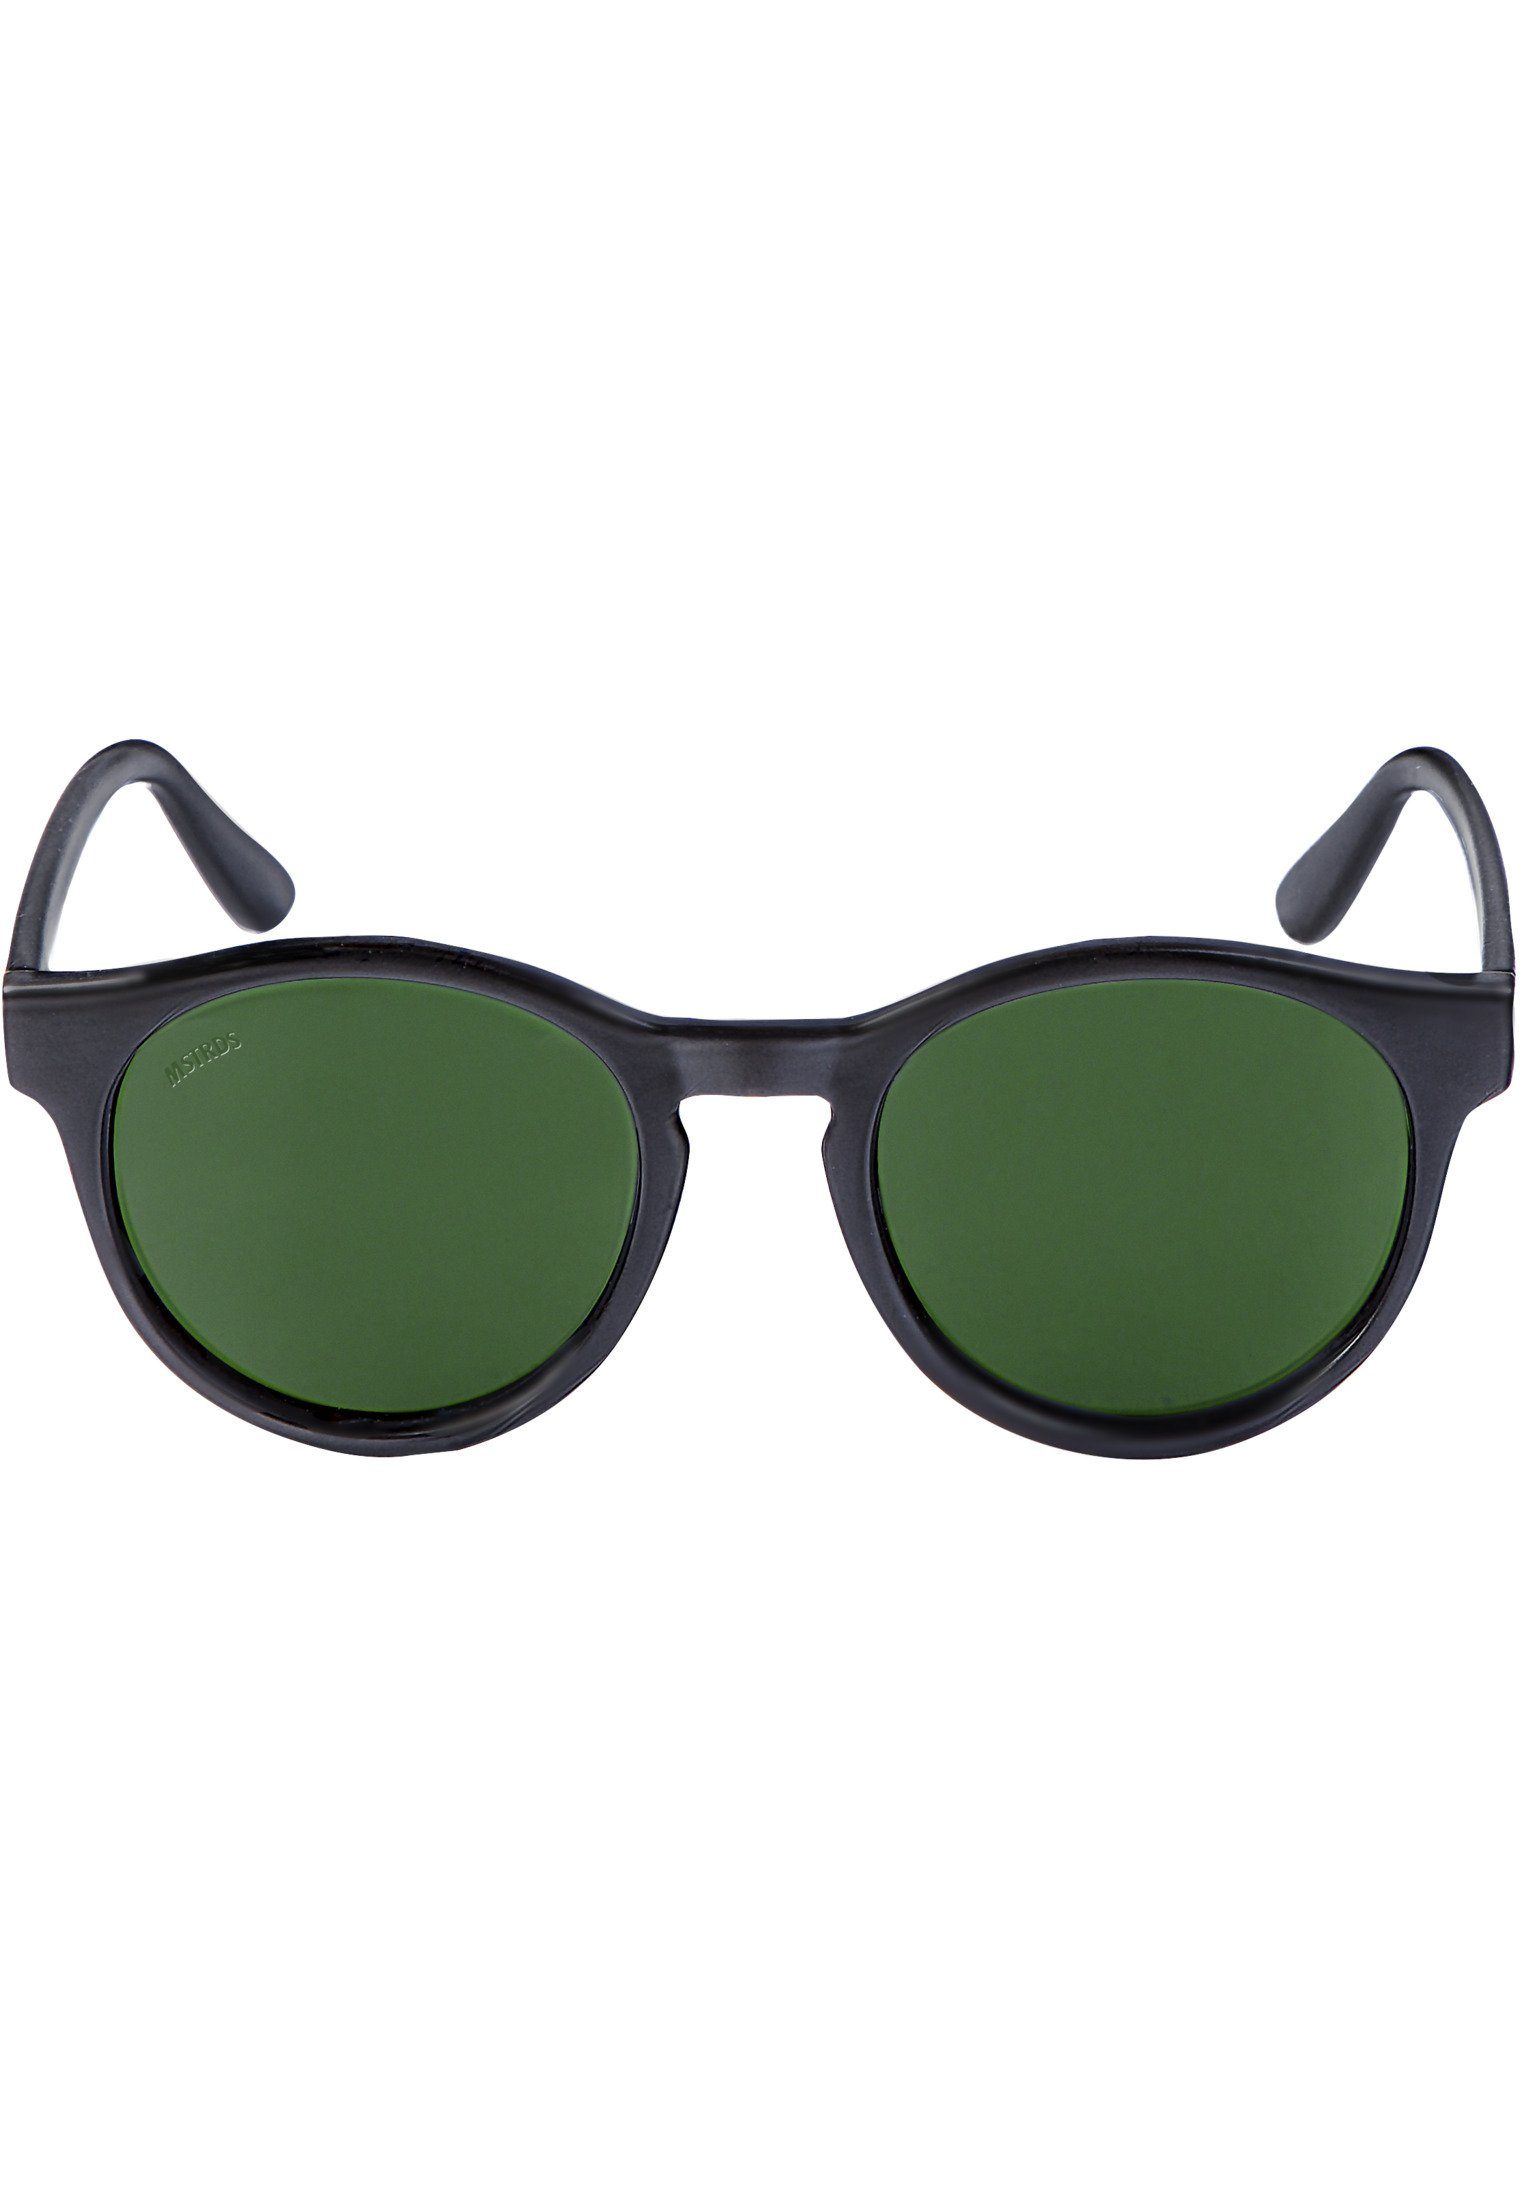 MSTRDS Sonnenbrille Accessoires Sunglasses Sunrise blk/grn